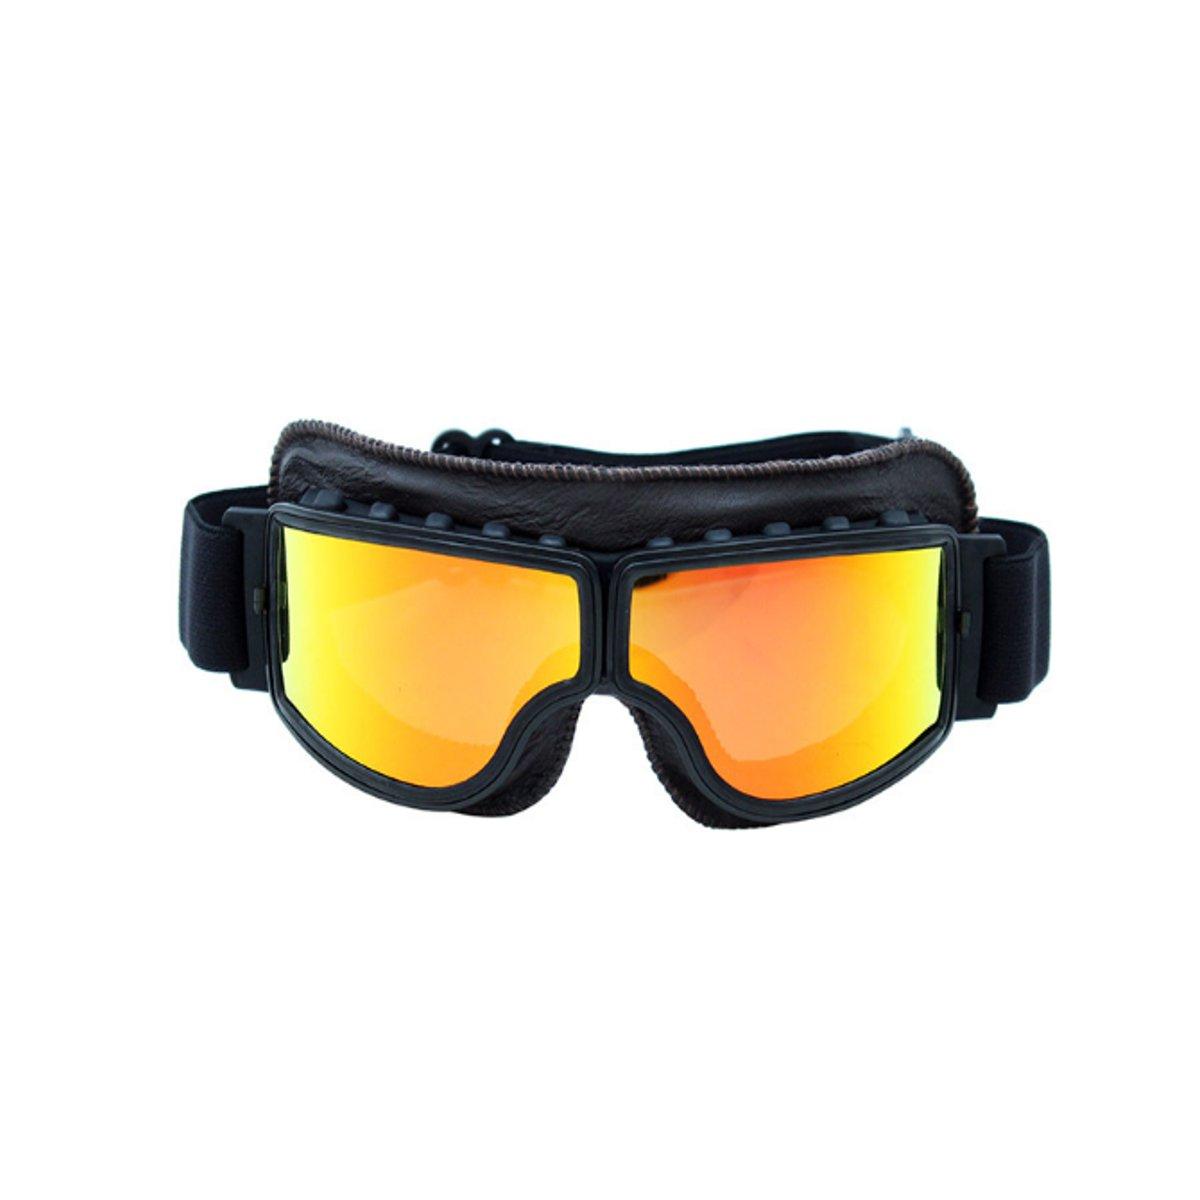 Eyewear Helmet Goggles Anti-UV Windproof Glasses Motorcycle Biker